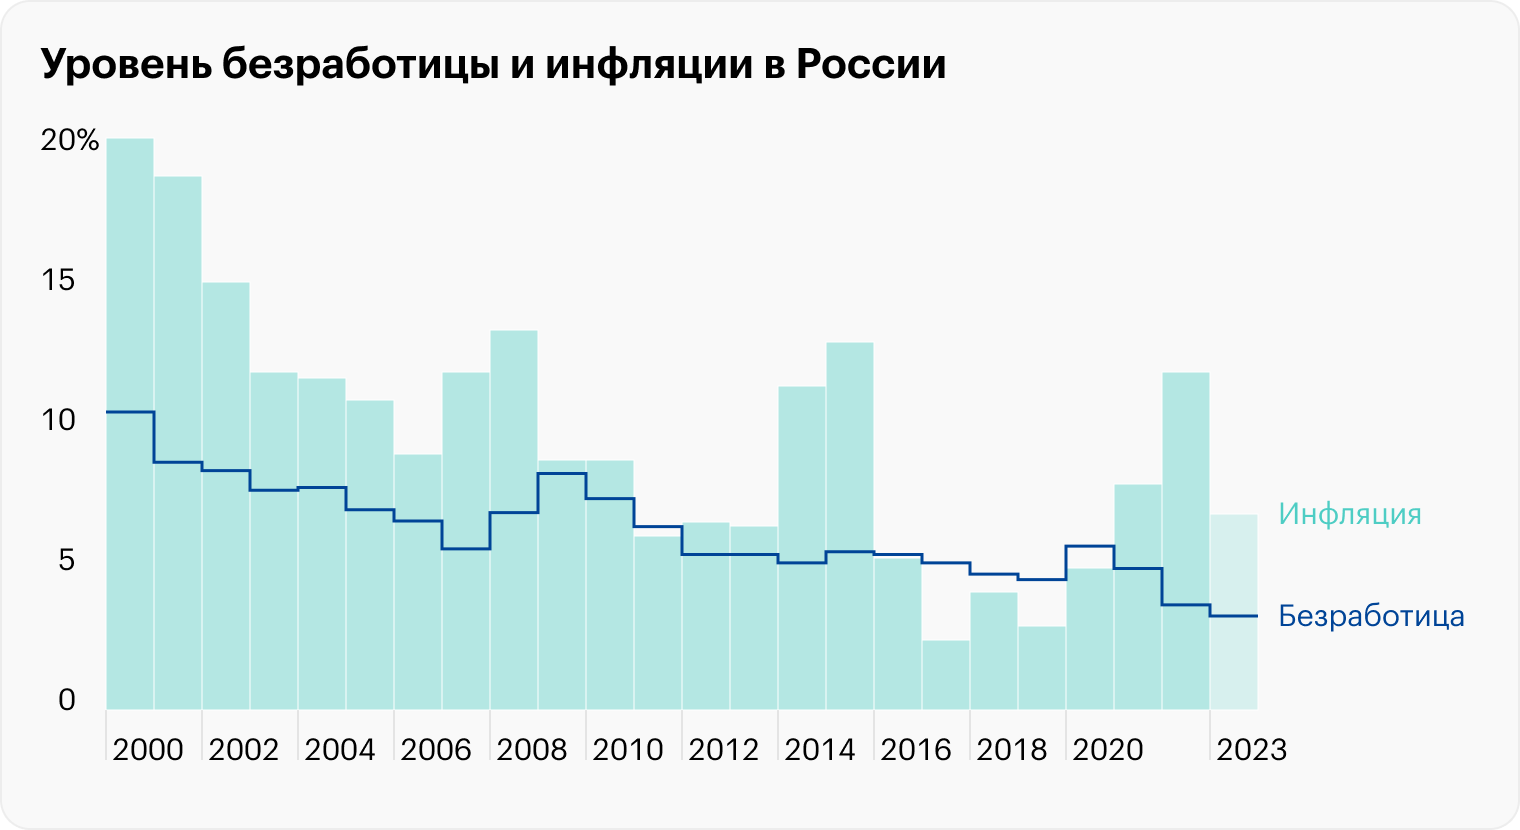 Источники: Росстат (инфляция), Росстат (безработица в 1992⁠—⁠2010), Росстат (безработица в 2011⁠—⁠2014), Росстат (безработица в 2015⁠—⁠2020), Минтруд (безработица в 2021), Минтруд (безработица в 2022), МВФ (прогноз безработицы в 2023 году)